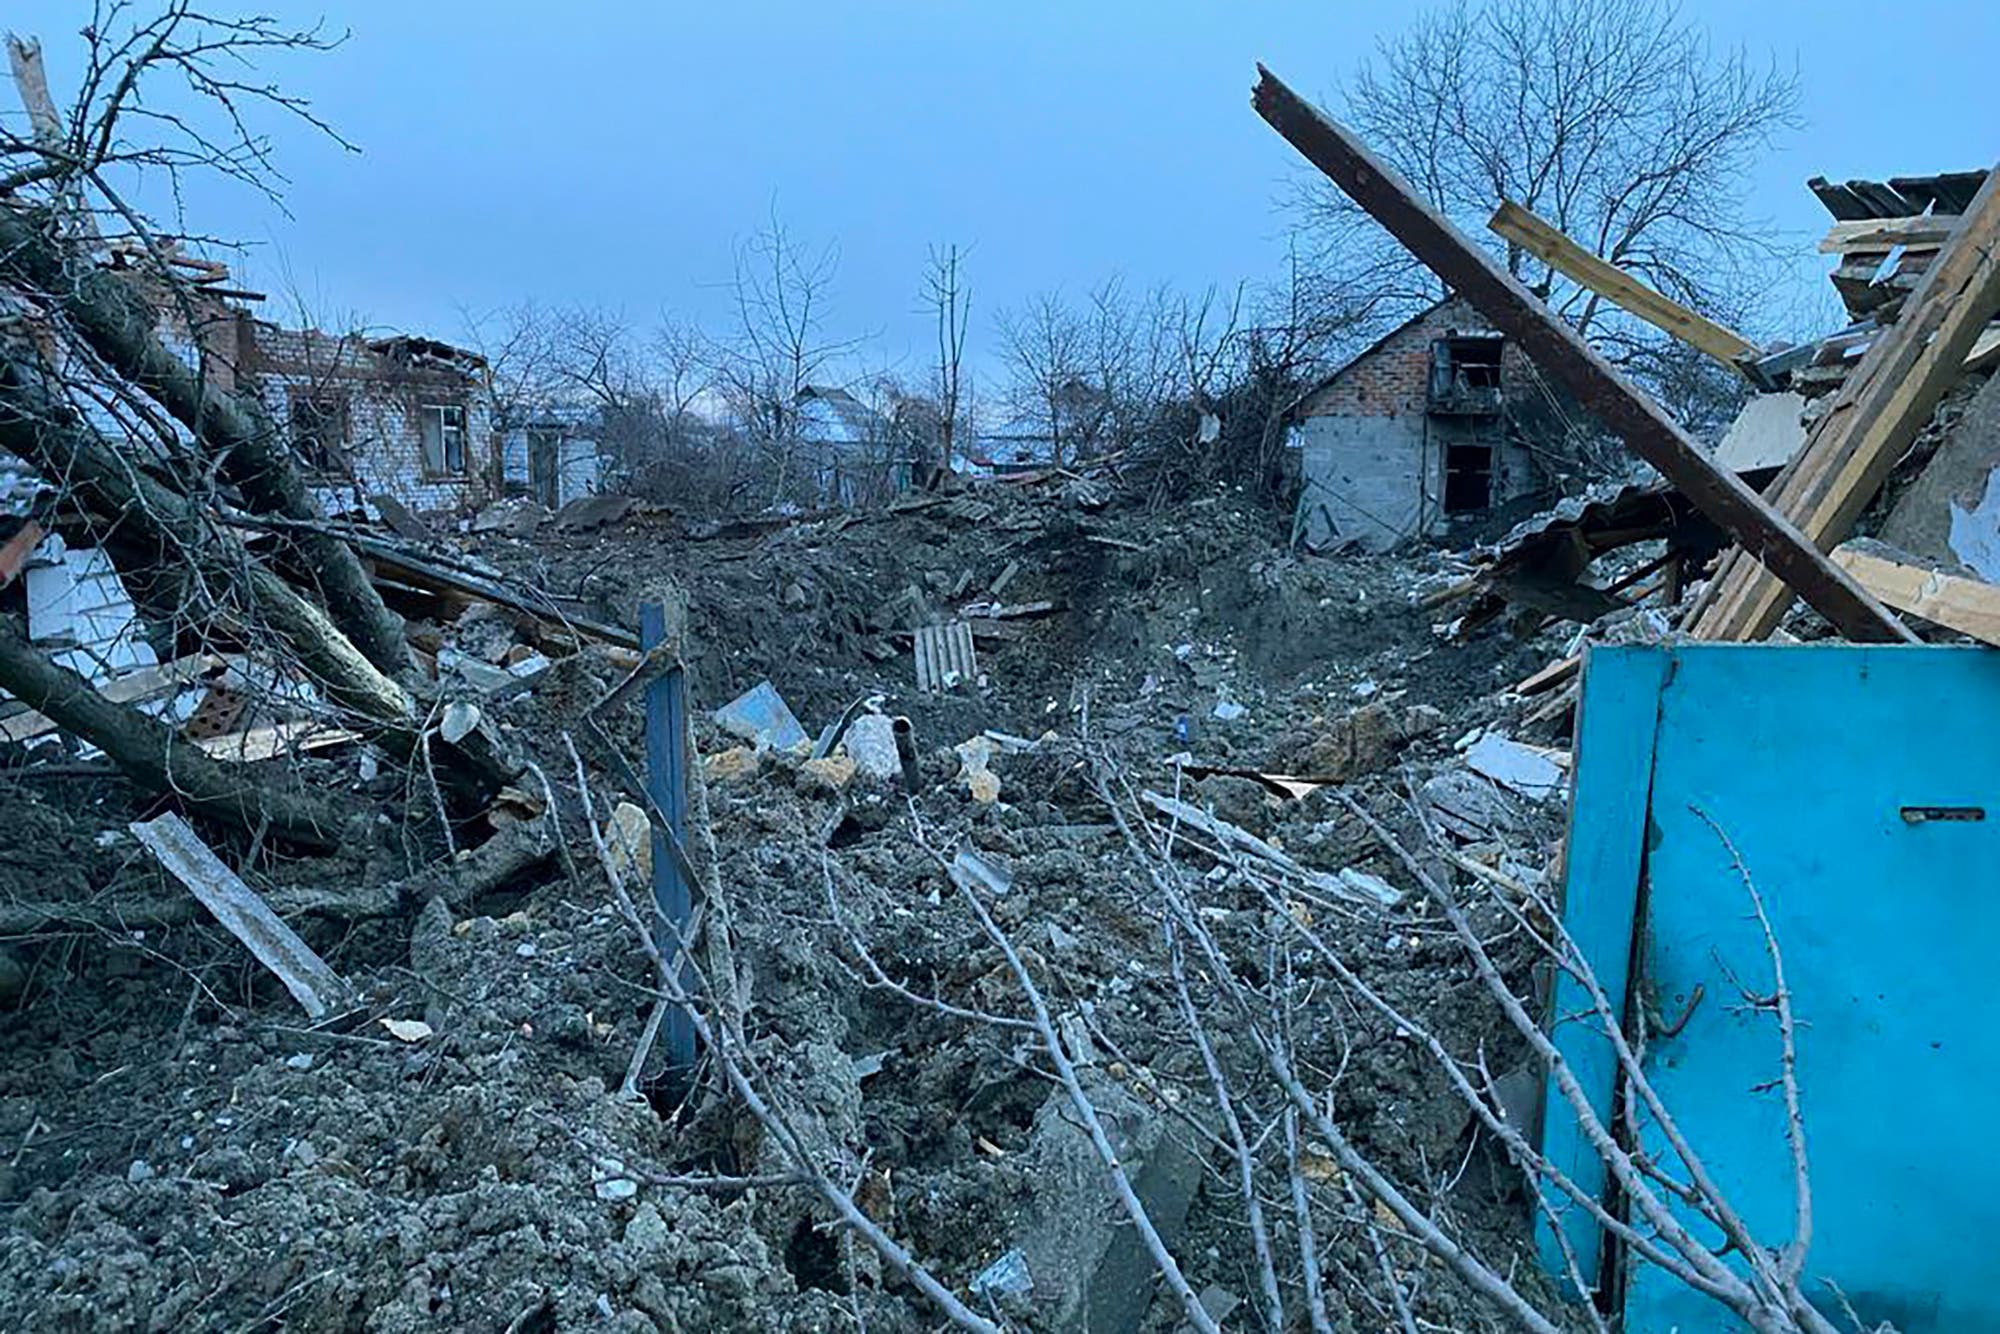 Un aereo russo bombarda per errore una città del Luhansk occupata dalle truppe di Putin